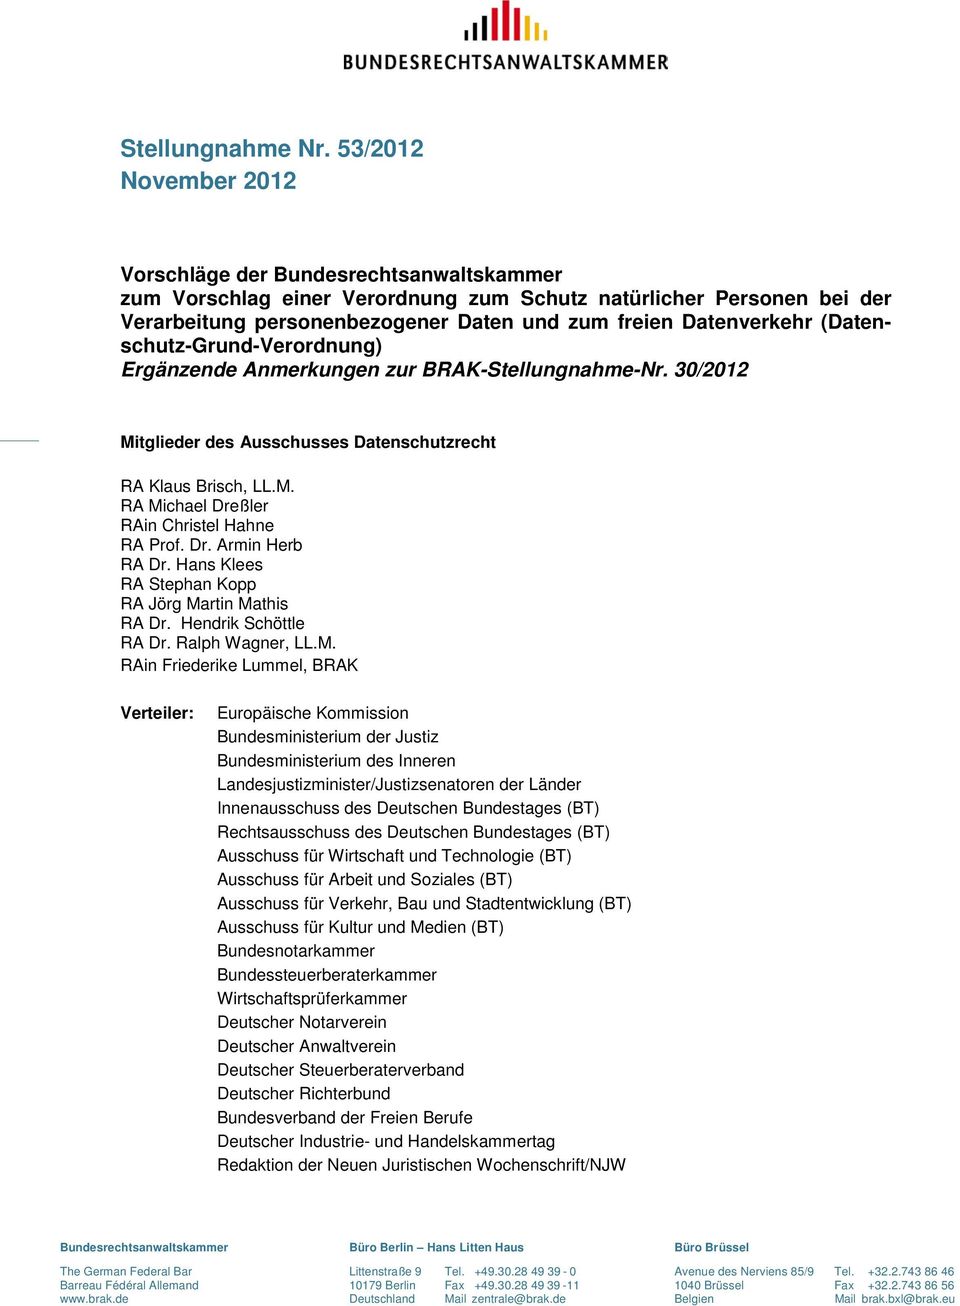 (Datenschutz-Grund-Verordnung) Ergänzende Anmerkungen zur BRAK-Stellungnahme-Nr. 30/2012 Mitglieder des Ausschusses Datenschutzrecht RA Klaus Brisch, LL.M. RA Michael Dreßler RAin Christel Hahne RA Prof.